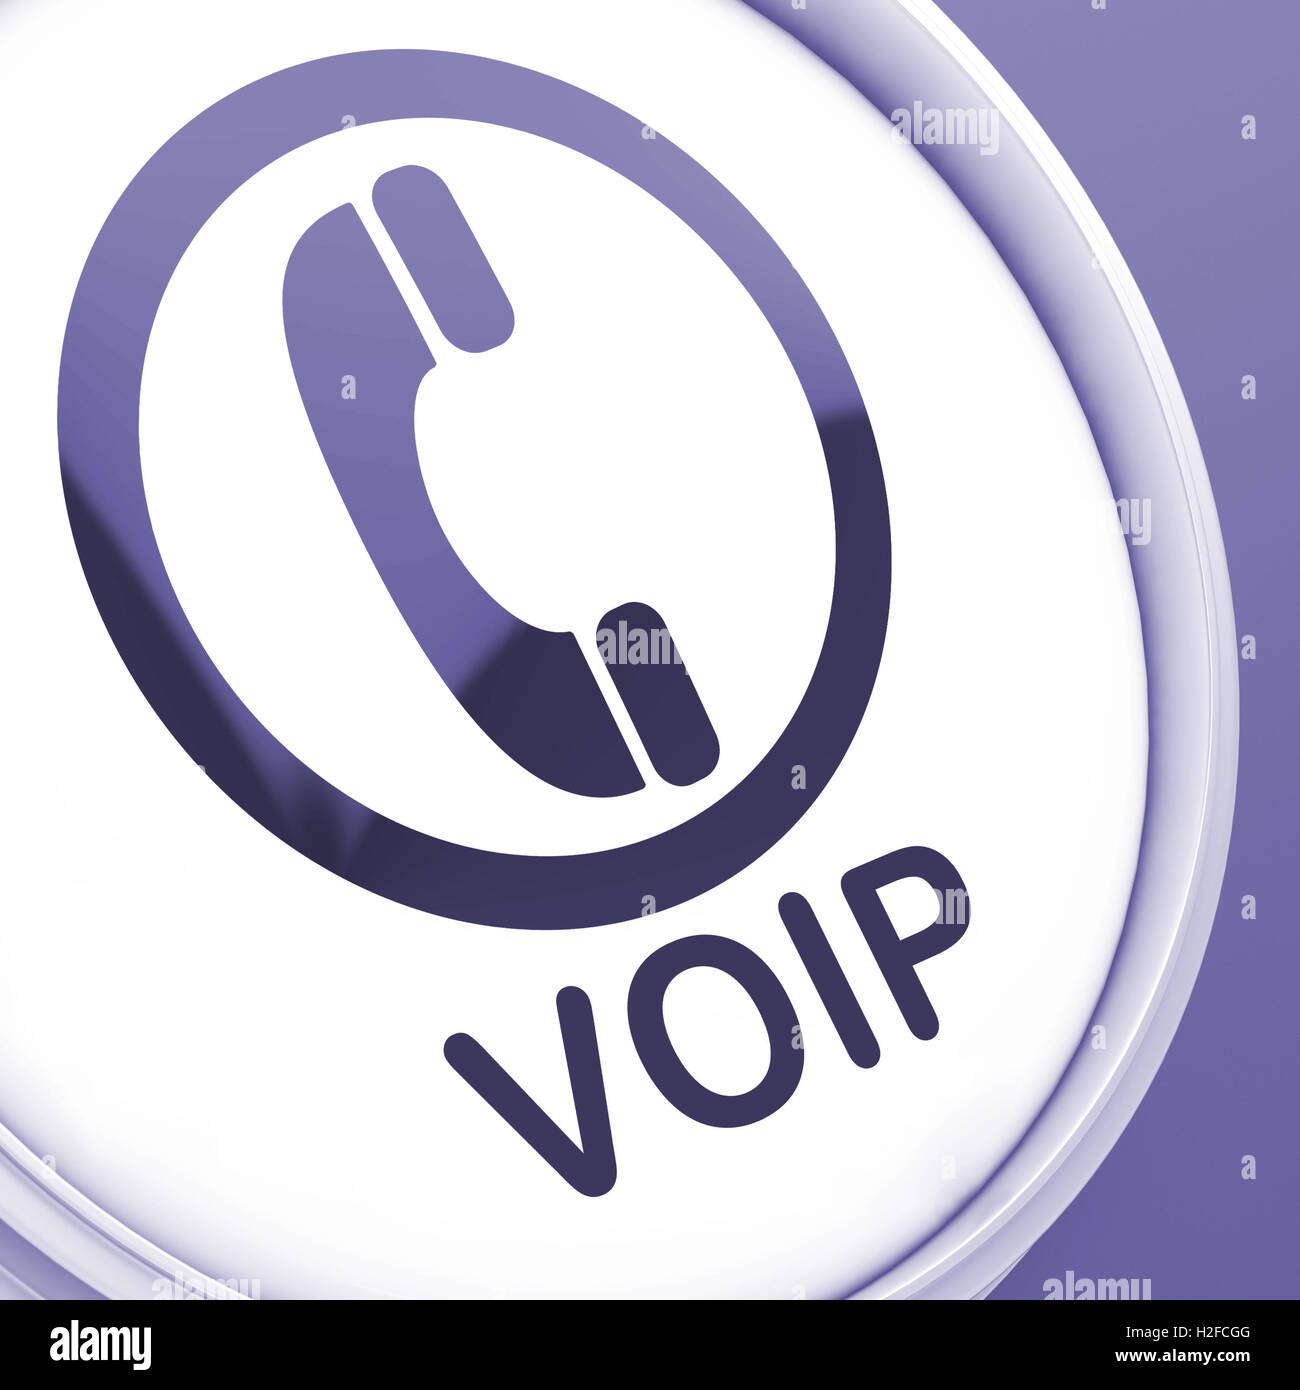 Pulsante Voip significa Voice Over Internet Protocol o tele a banda larga Foto Stock